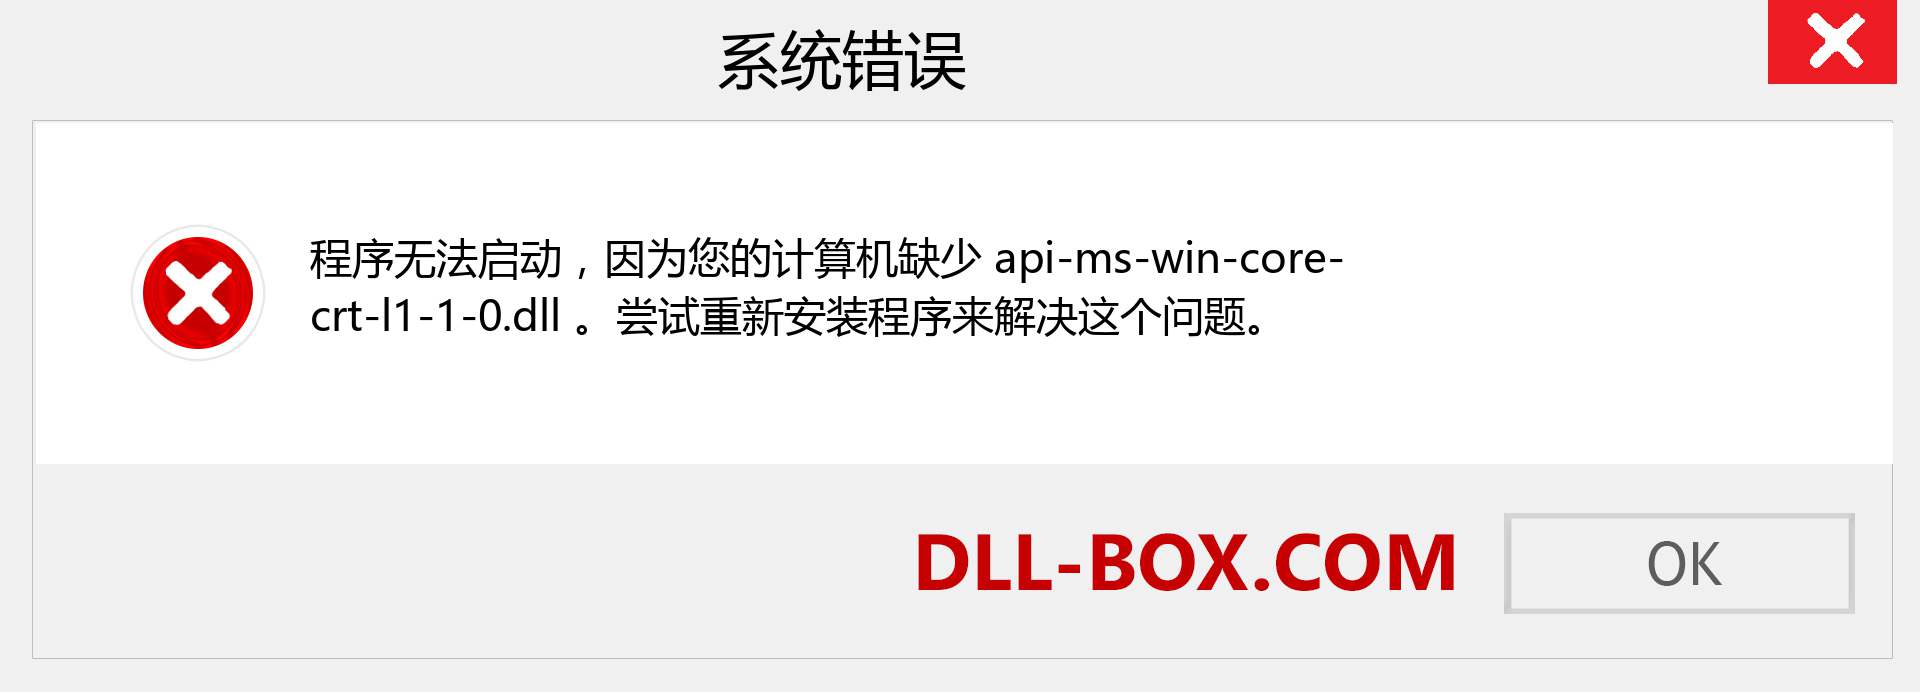 api-ms-win-core-crt-l1-1-0.dll 文件丢失？。 适用于 Windows 7、8、10 的下载 - 修复 Windows、照片、图像上的 api-ms-win-core-crt-l1-1-0 dll 丢失错误